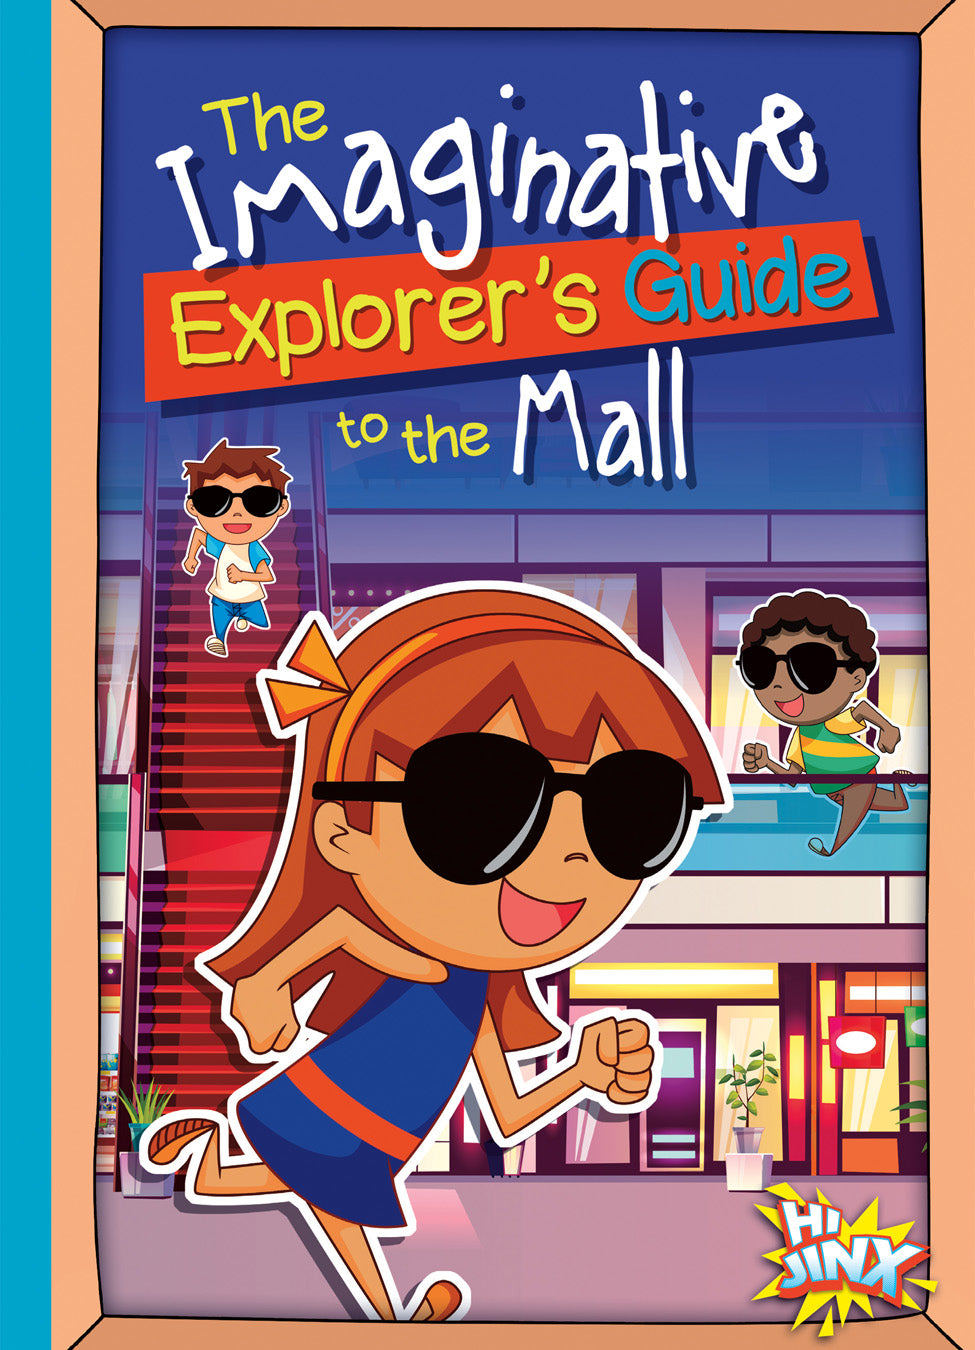 The Imaginative Explorer's Guide: The Imaginative Explorer's Guide to the Mall